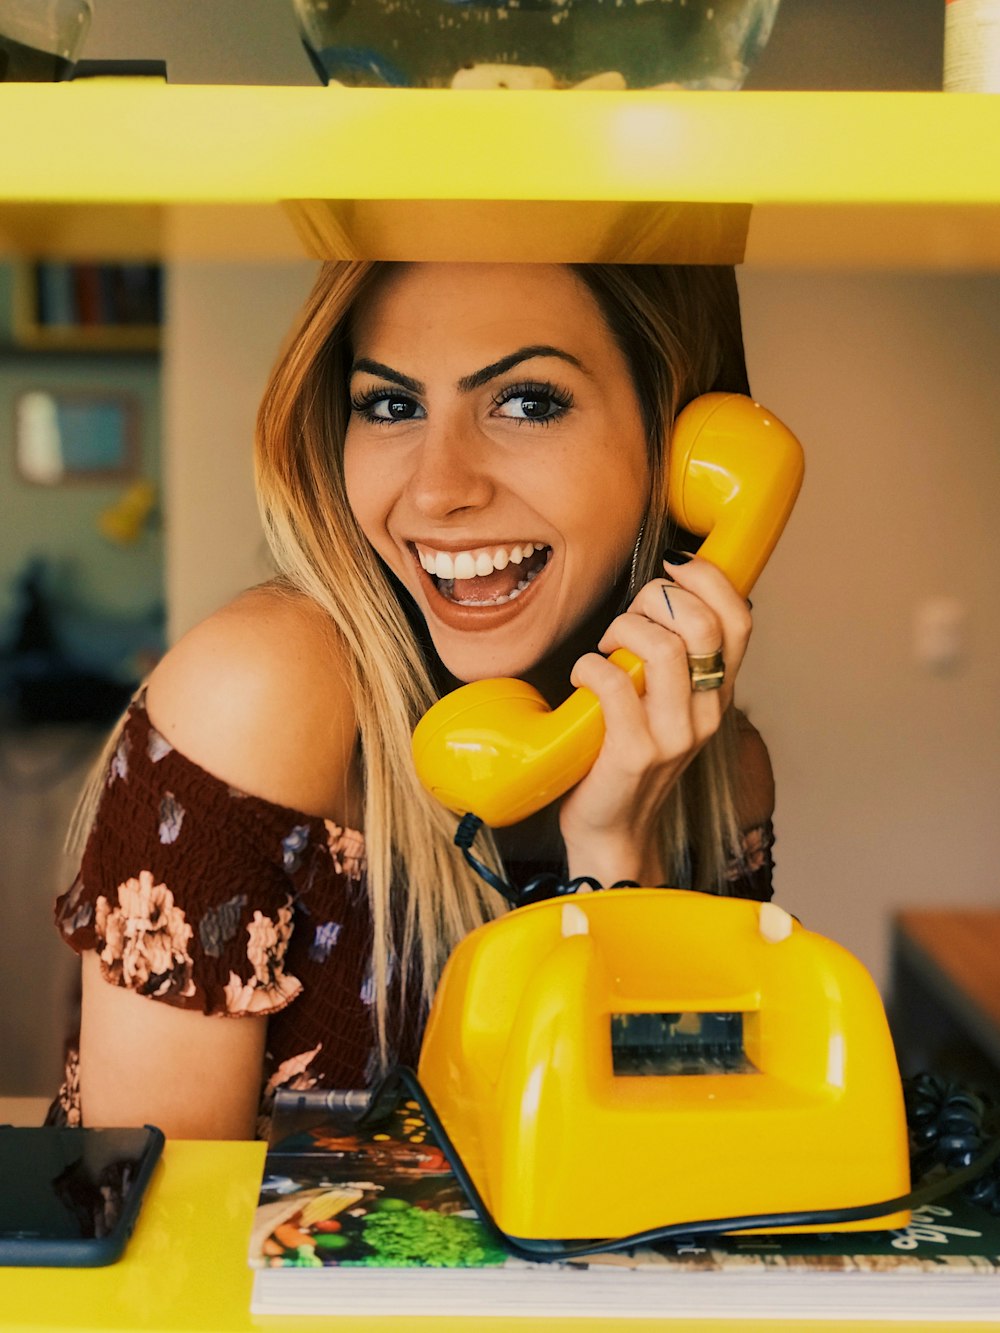 Femme tenant un téléphone à cadran jaune